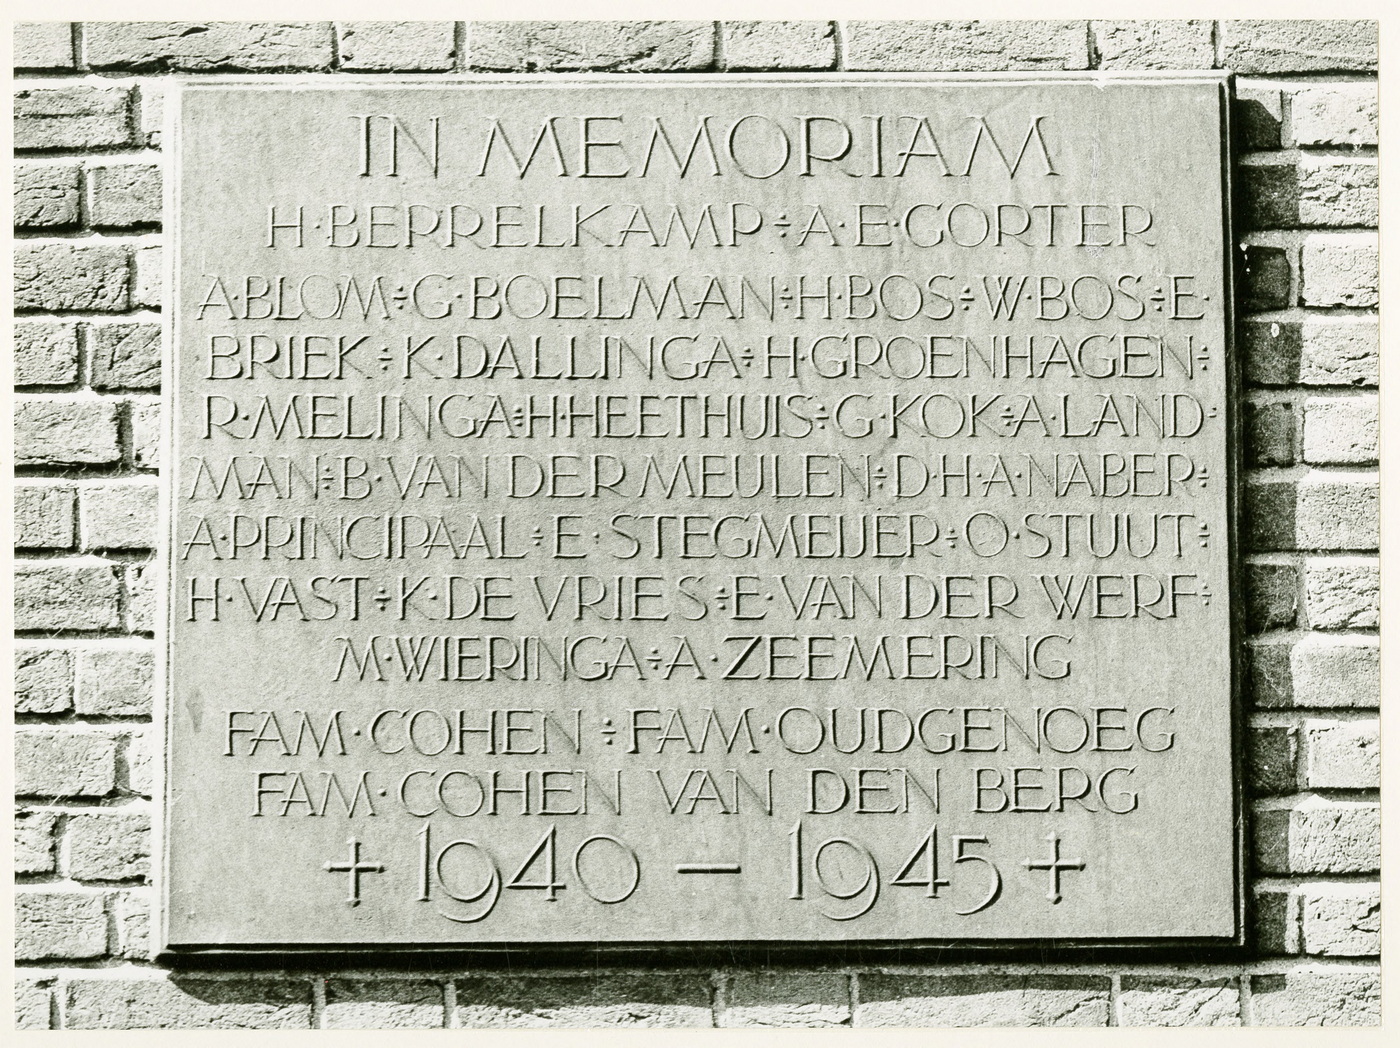 Woldendorp : plaquette ter nagedachtenis van de dorpelingen die omkwamen in de Tweede Wereldoorlog. Vervaardiger: M.A. Douma. Bron: RHC GA, Beeldbank Groningen.